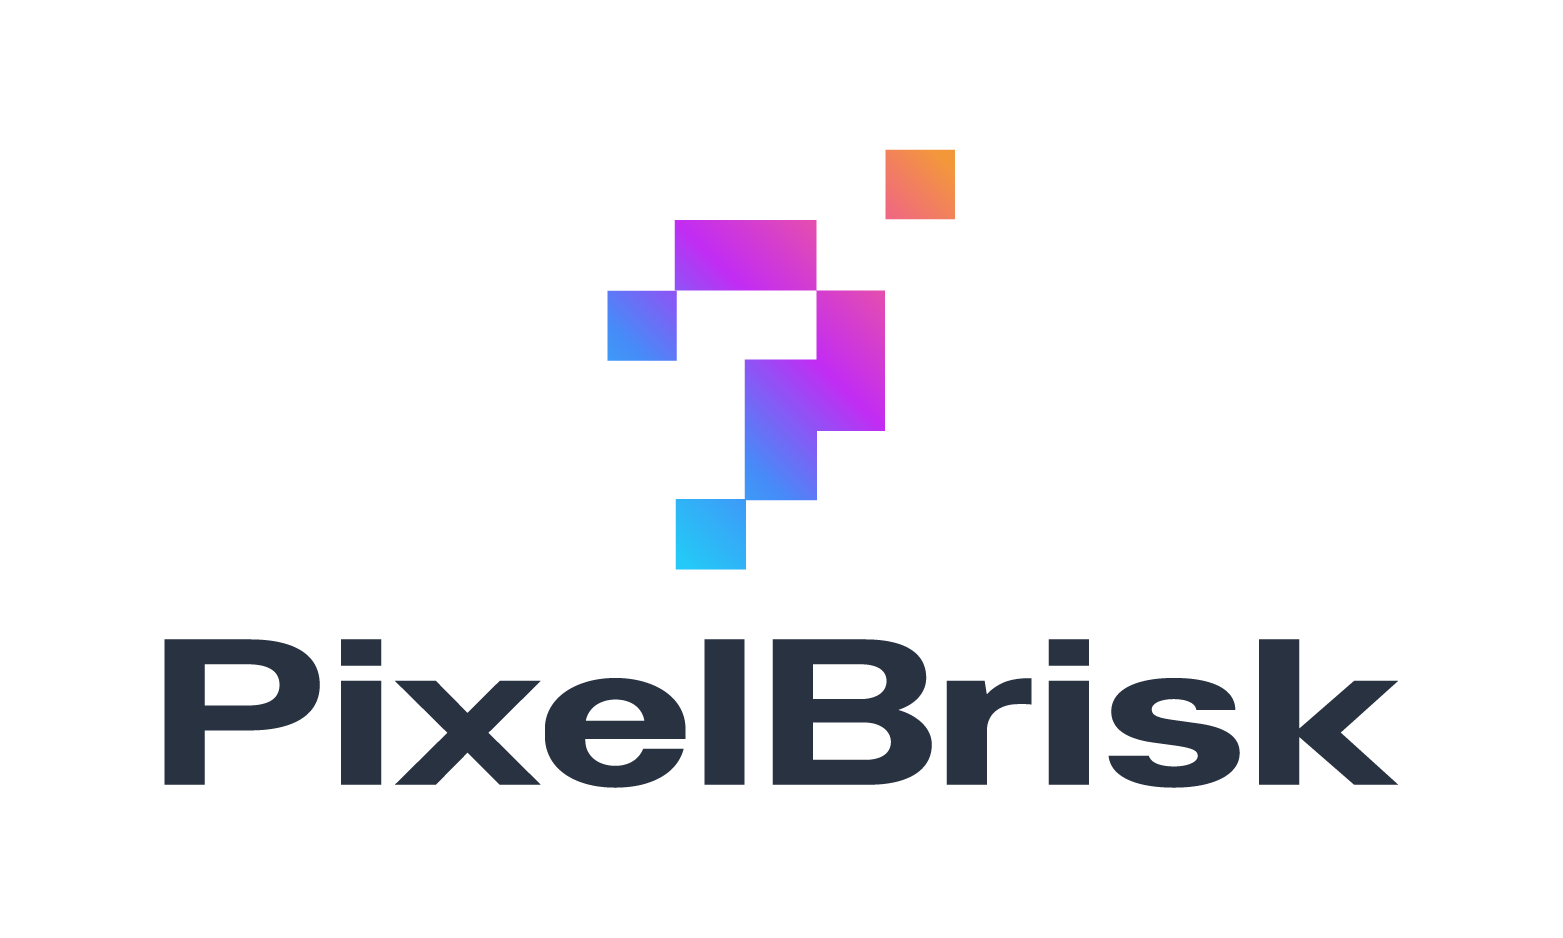 PixelBrisk.com - Creative brandable domain for sale